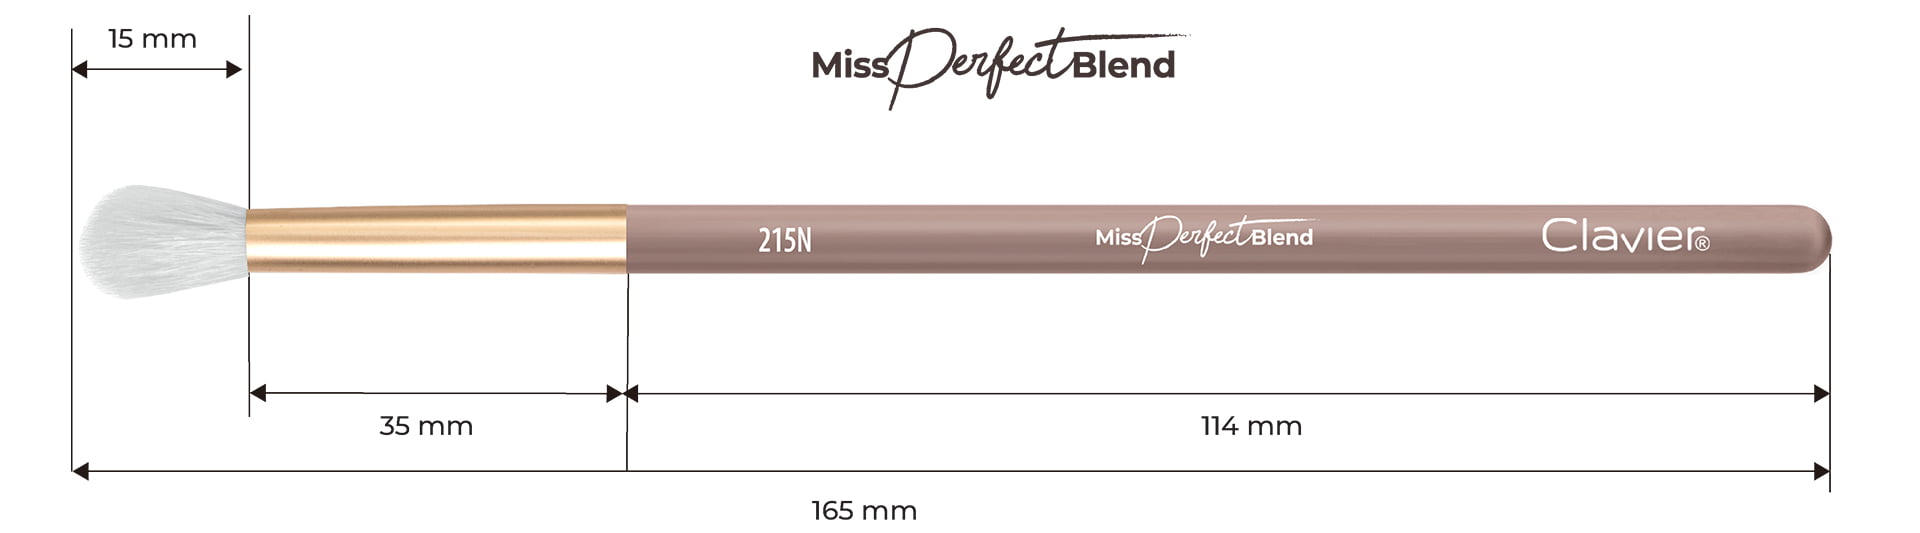 Pędzel do blendowania, z włosia naturalnego - "Miss Perfect Blend" 215N - Clavier.pl